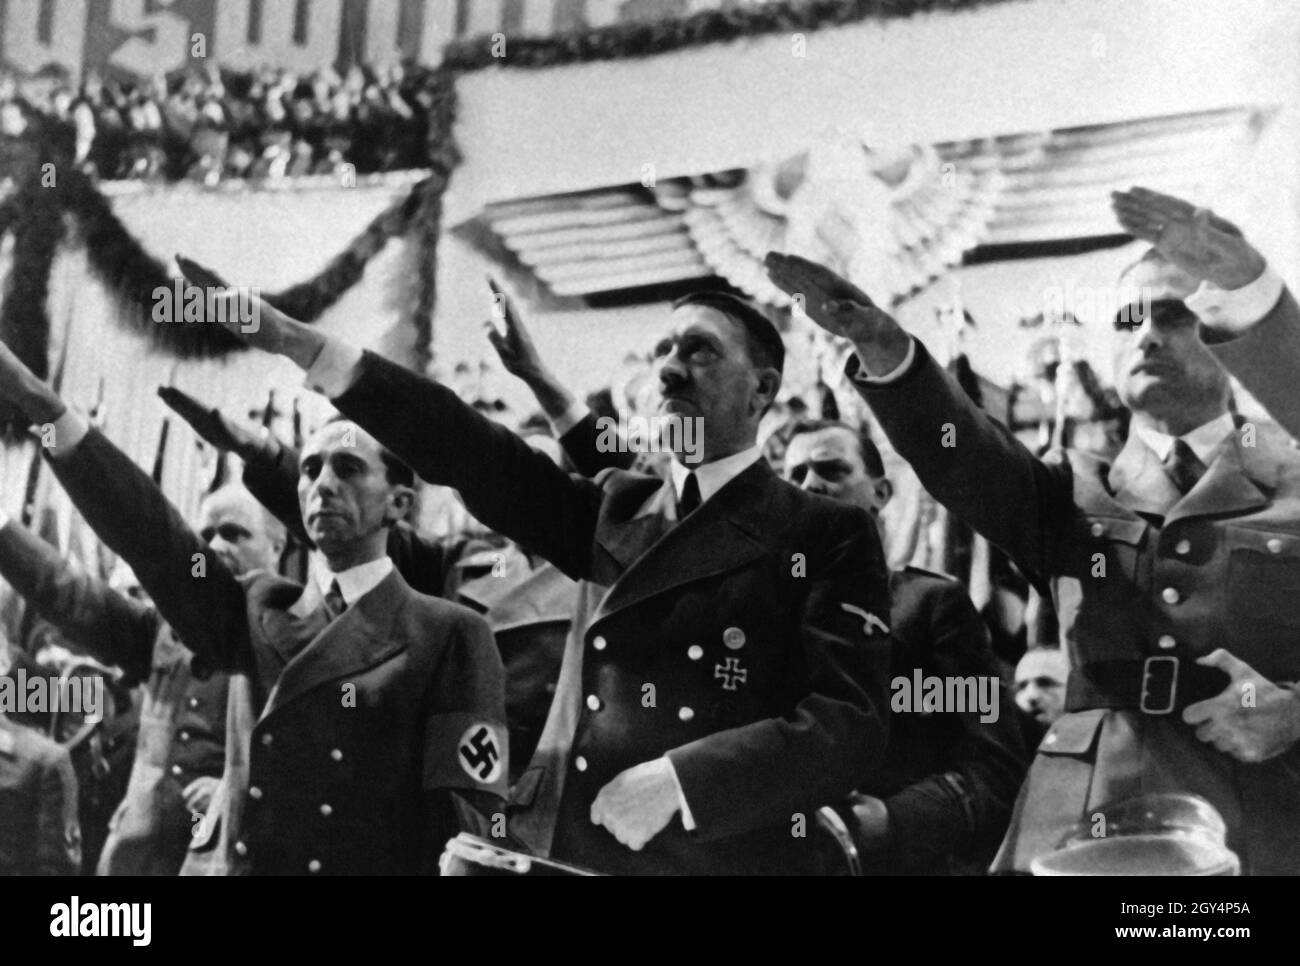 Goebbels, Hitler und Hess eröffnen den Winter war Relief Fund 1939 mit dem Hitlergruß zur Nationalhymne. Obwohl die WHW in erster Linie dazu diente, schlecht versorgte Bevölkerungsgruppen zu versorgen, war sie im Wesentlichen eine Propagandakampagne der NSDAP, um den Volksgeist und die Volksgemeinschaft zu evozieren. [Automatisierte Übersetzung] Stockfoto